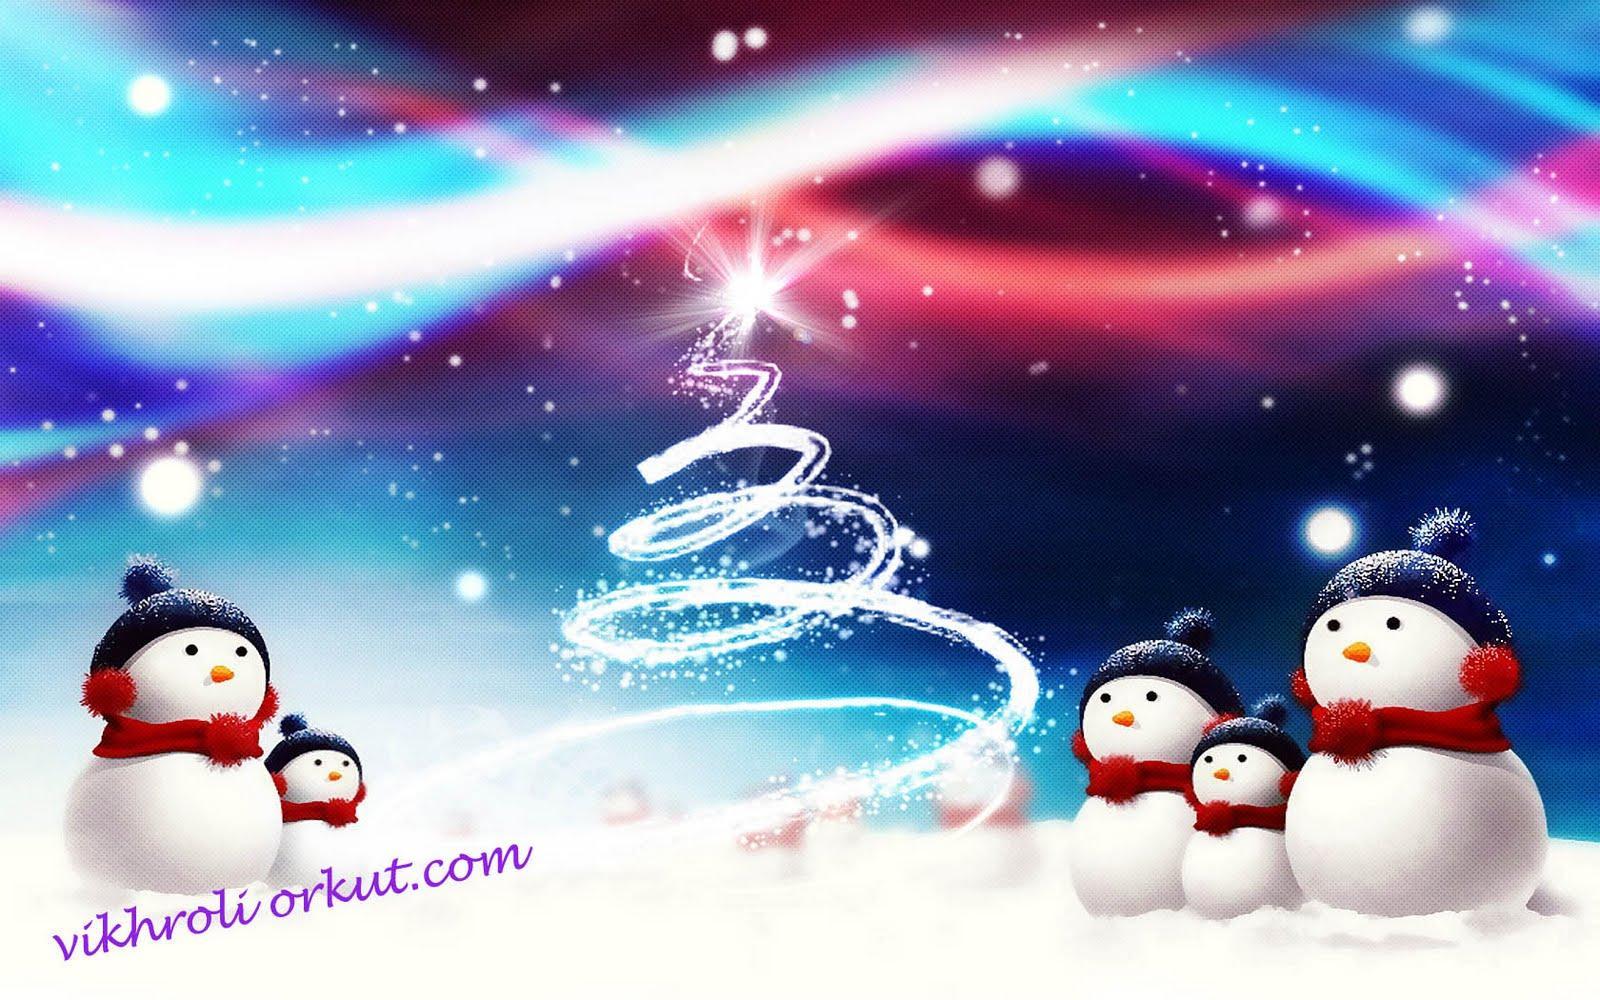 Christmas 3D. Vikhroli Orkut Wallpaper